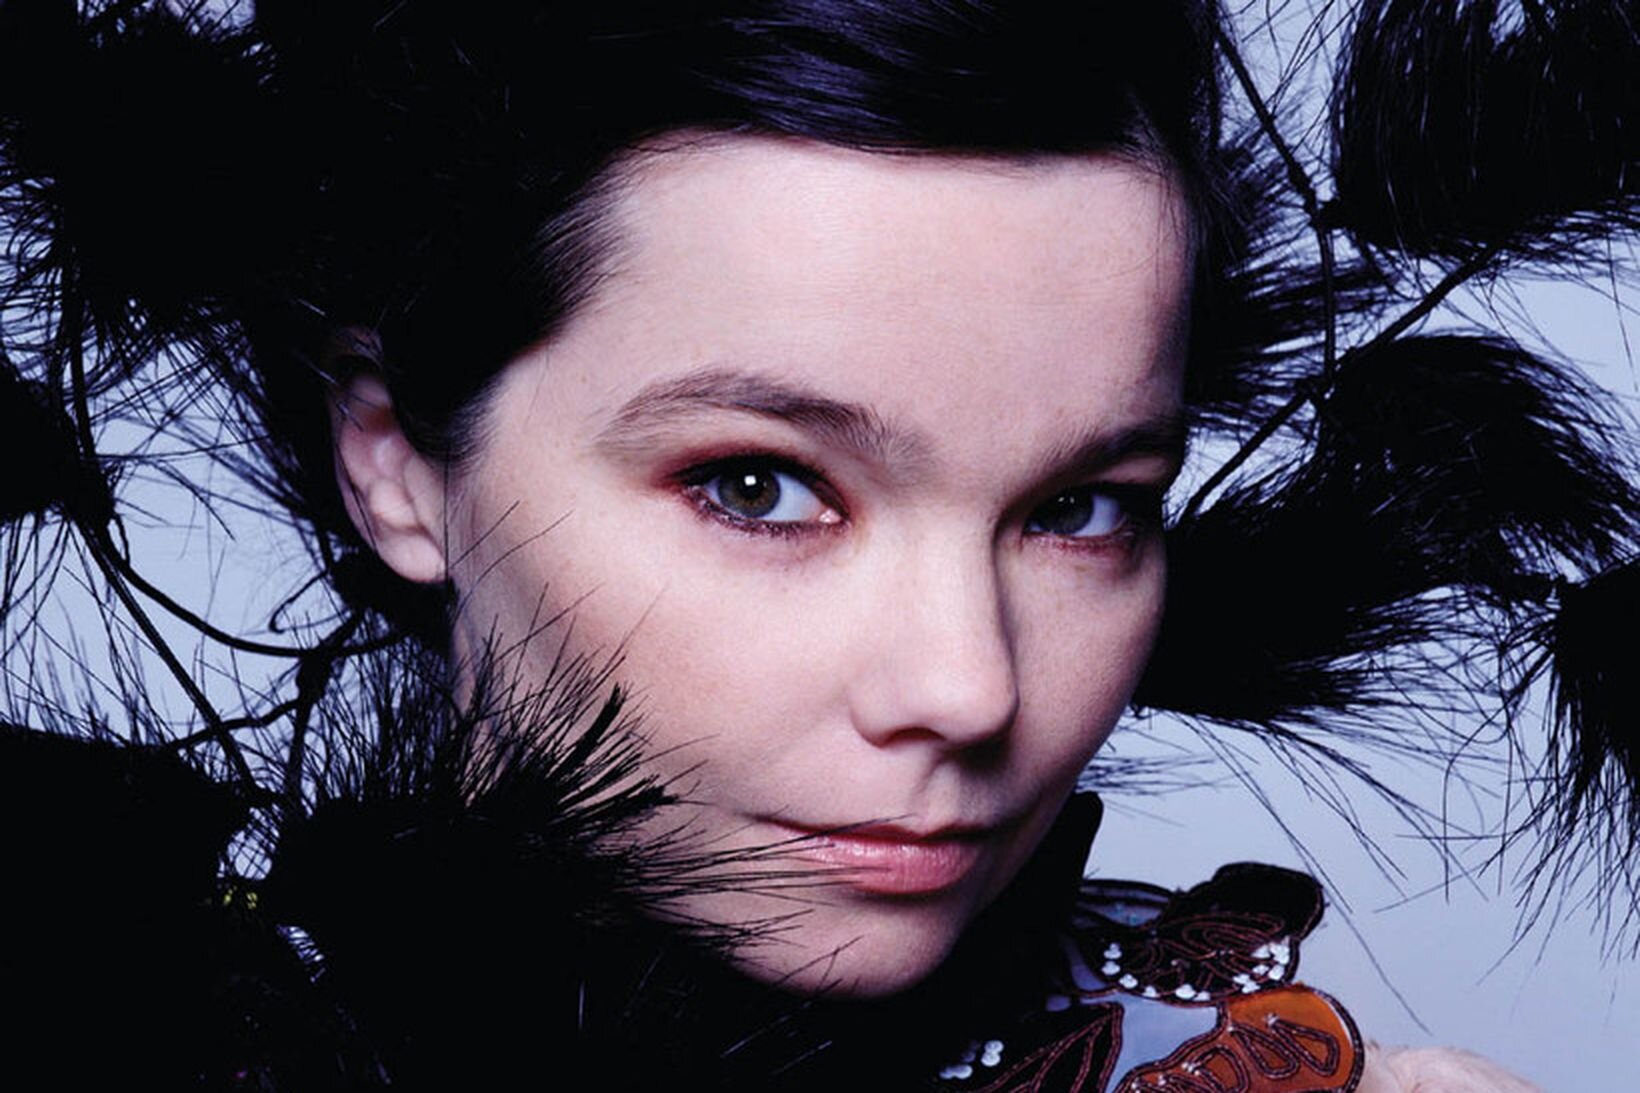 Björk Guðmundsdóttir, renowned Icelandic singer